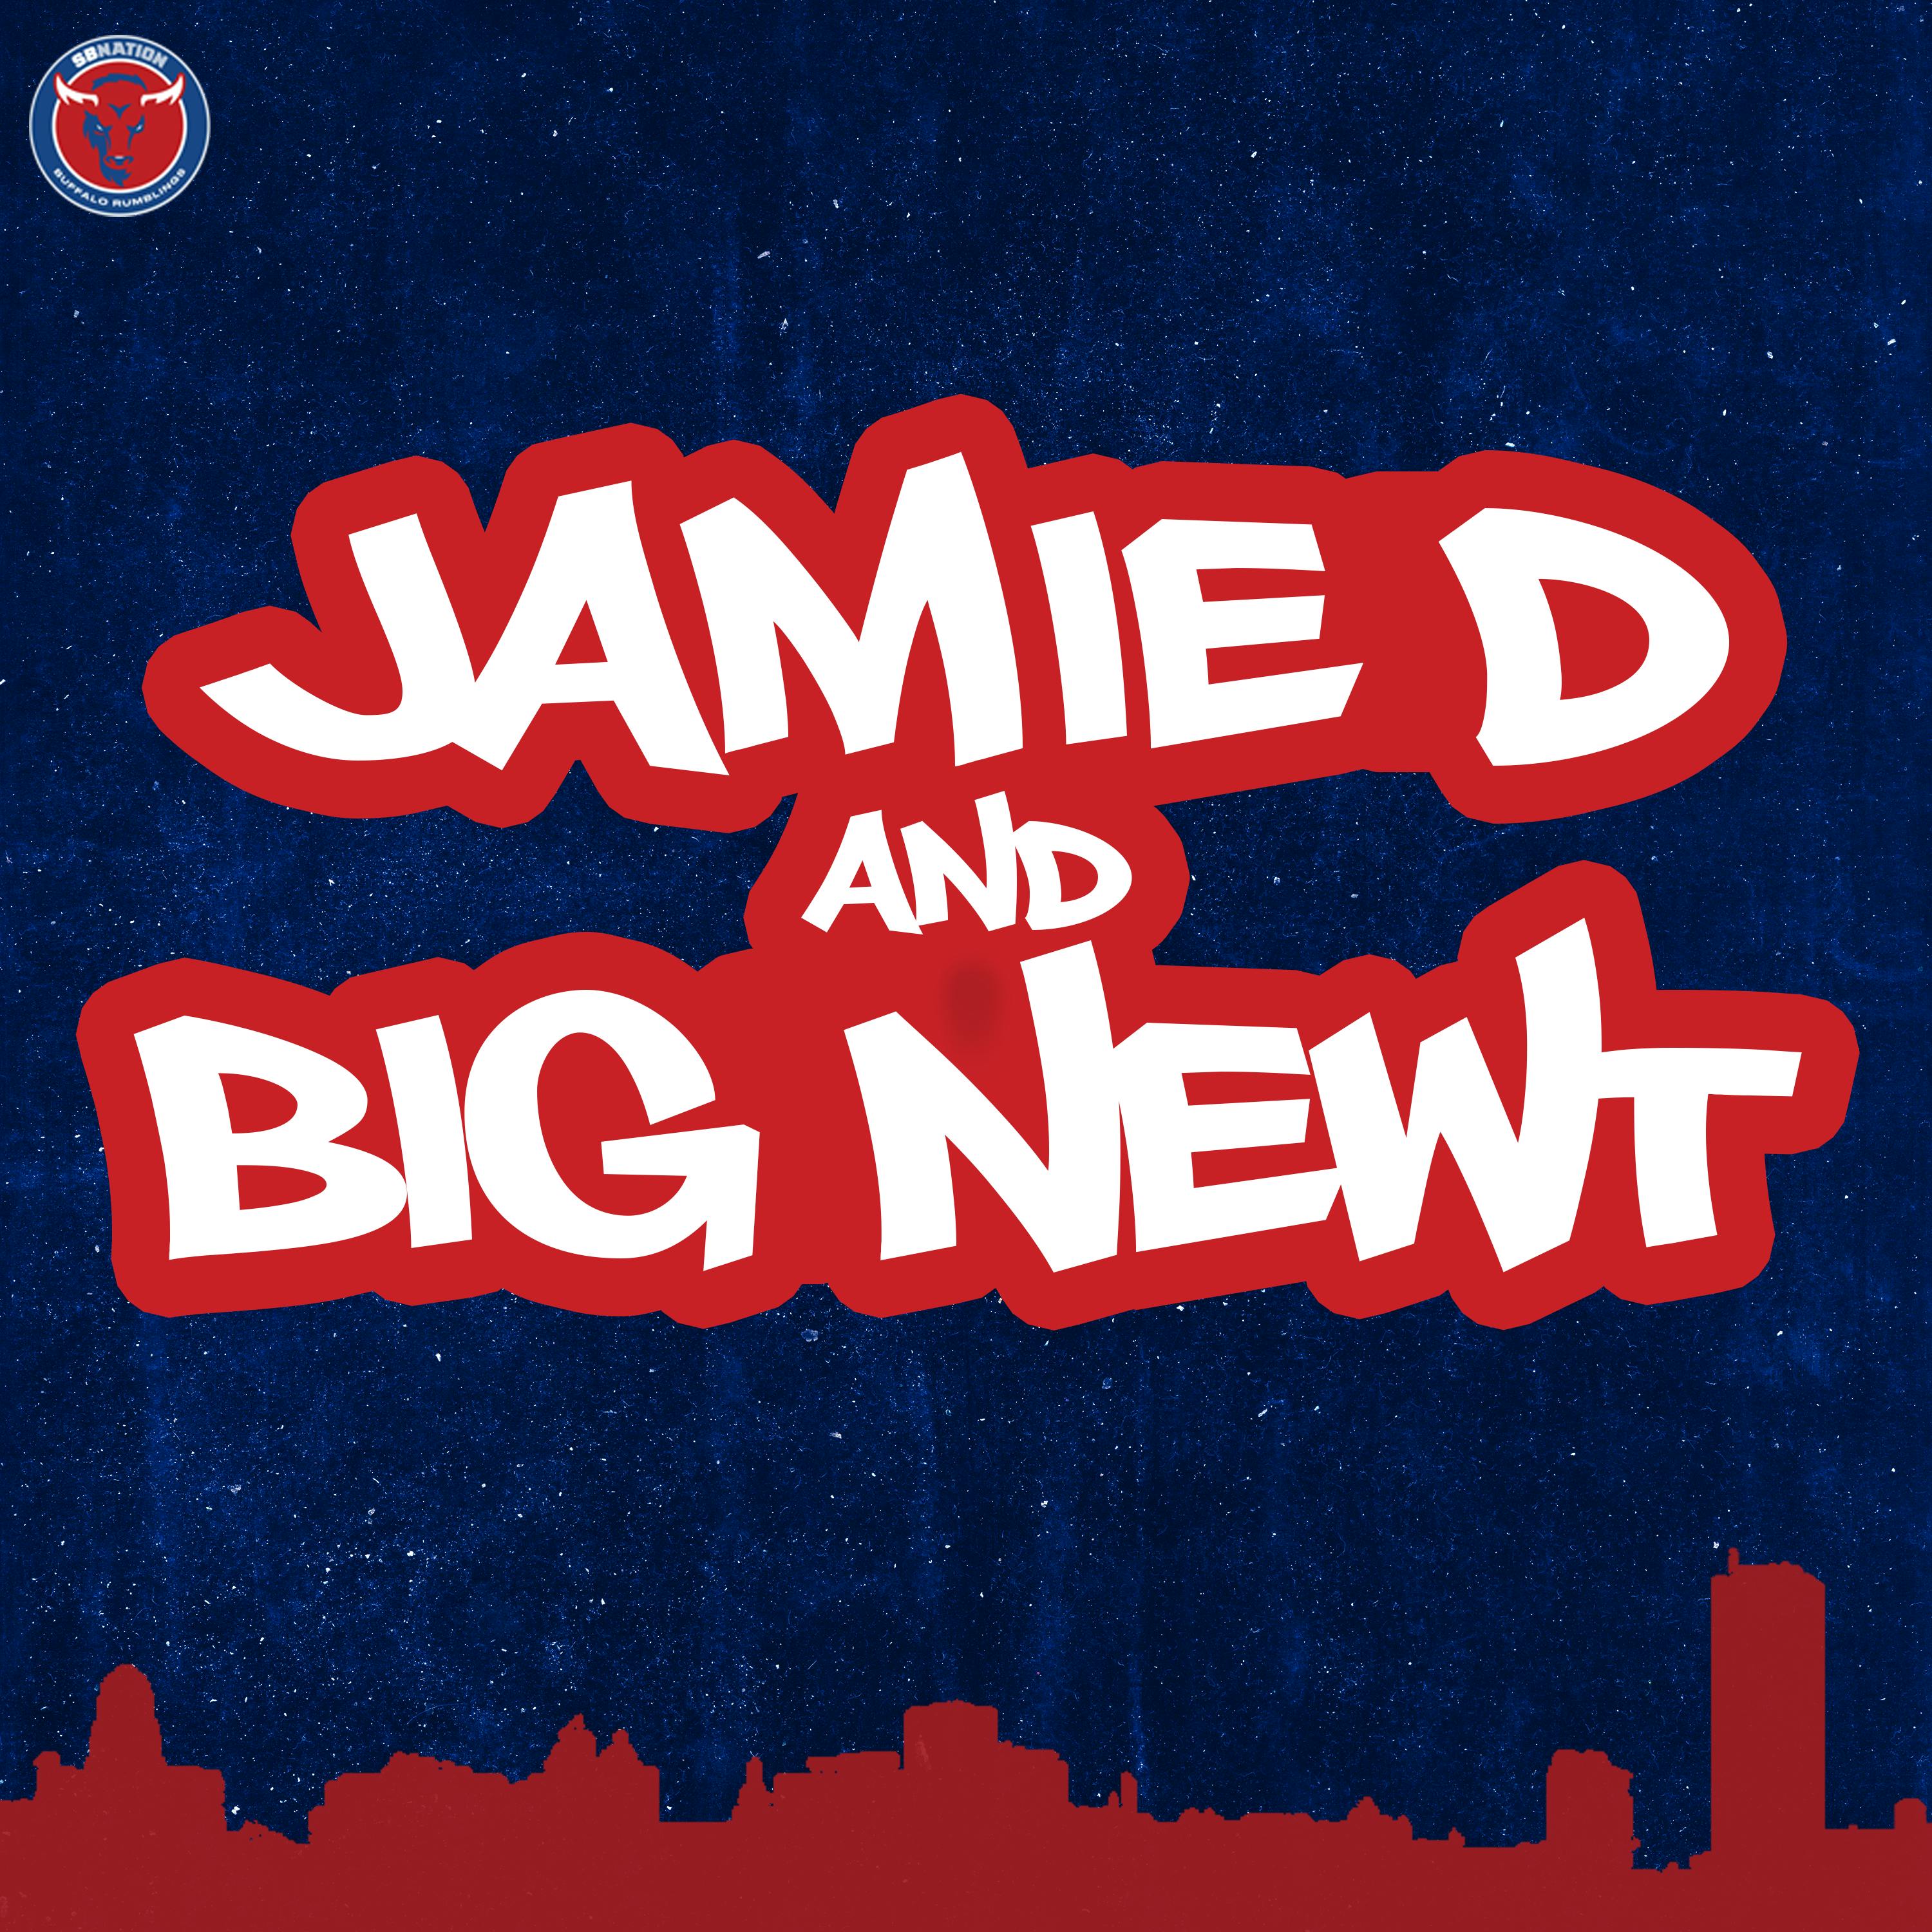 Jamie D & Big Newt: Buffalo Bills Draft Strategy